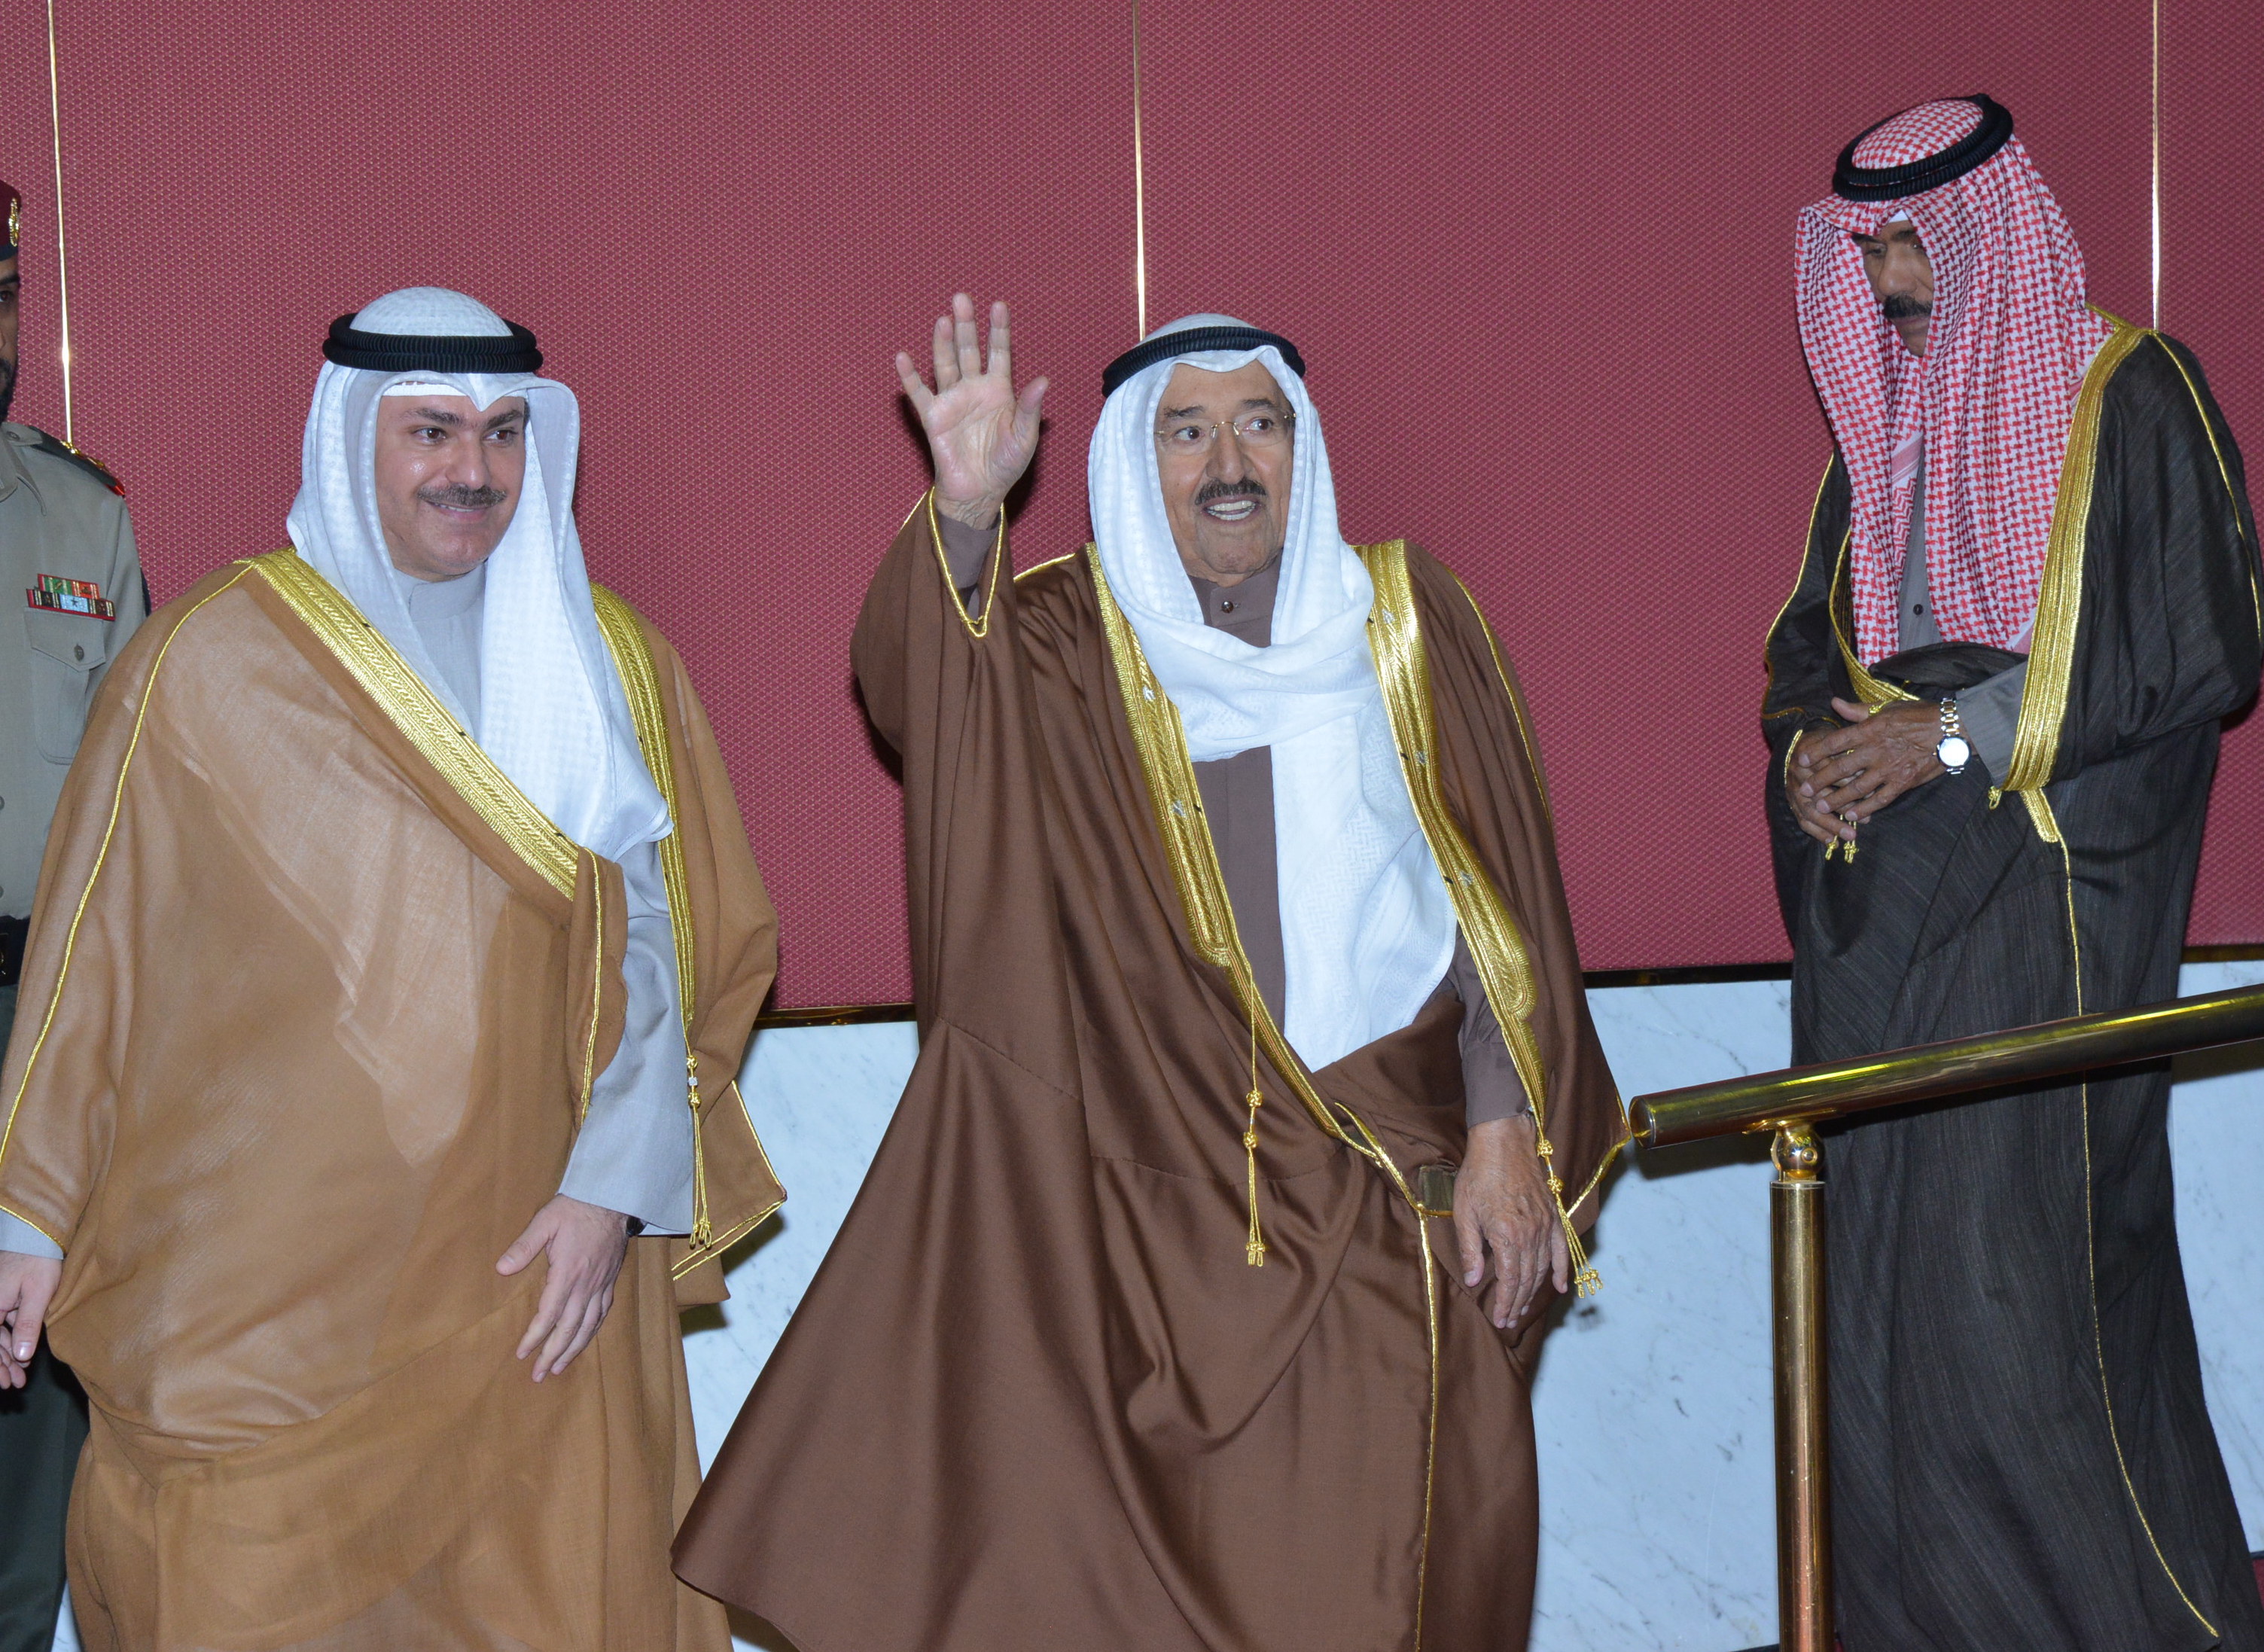 His Highness the Amir Sheikh Sabah Al-Ahmad Al-Jaber Al-Sabah patronizes, attends Quran competition ceremony